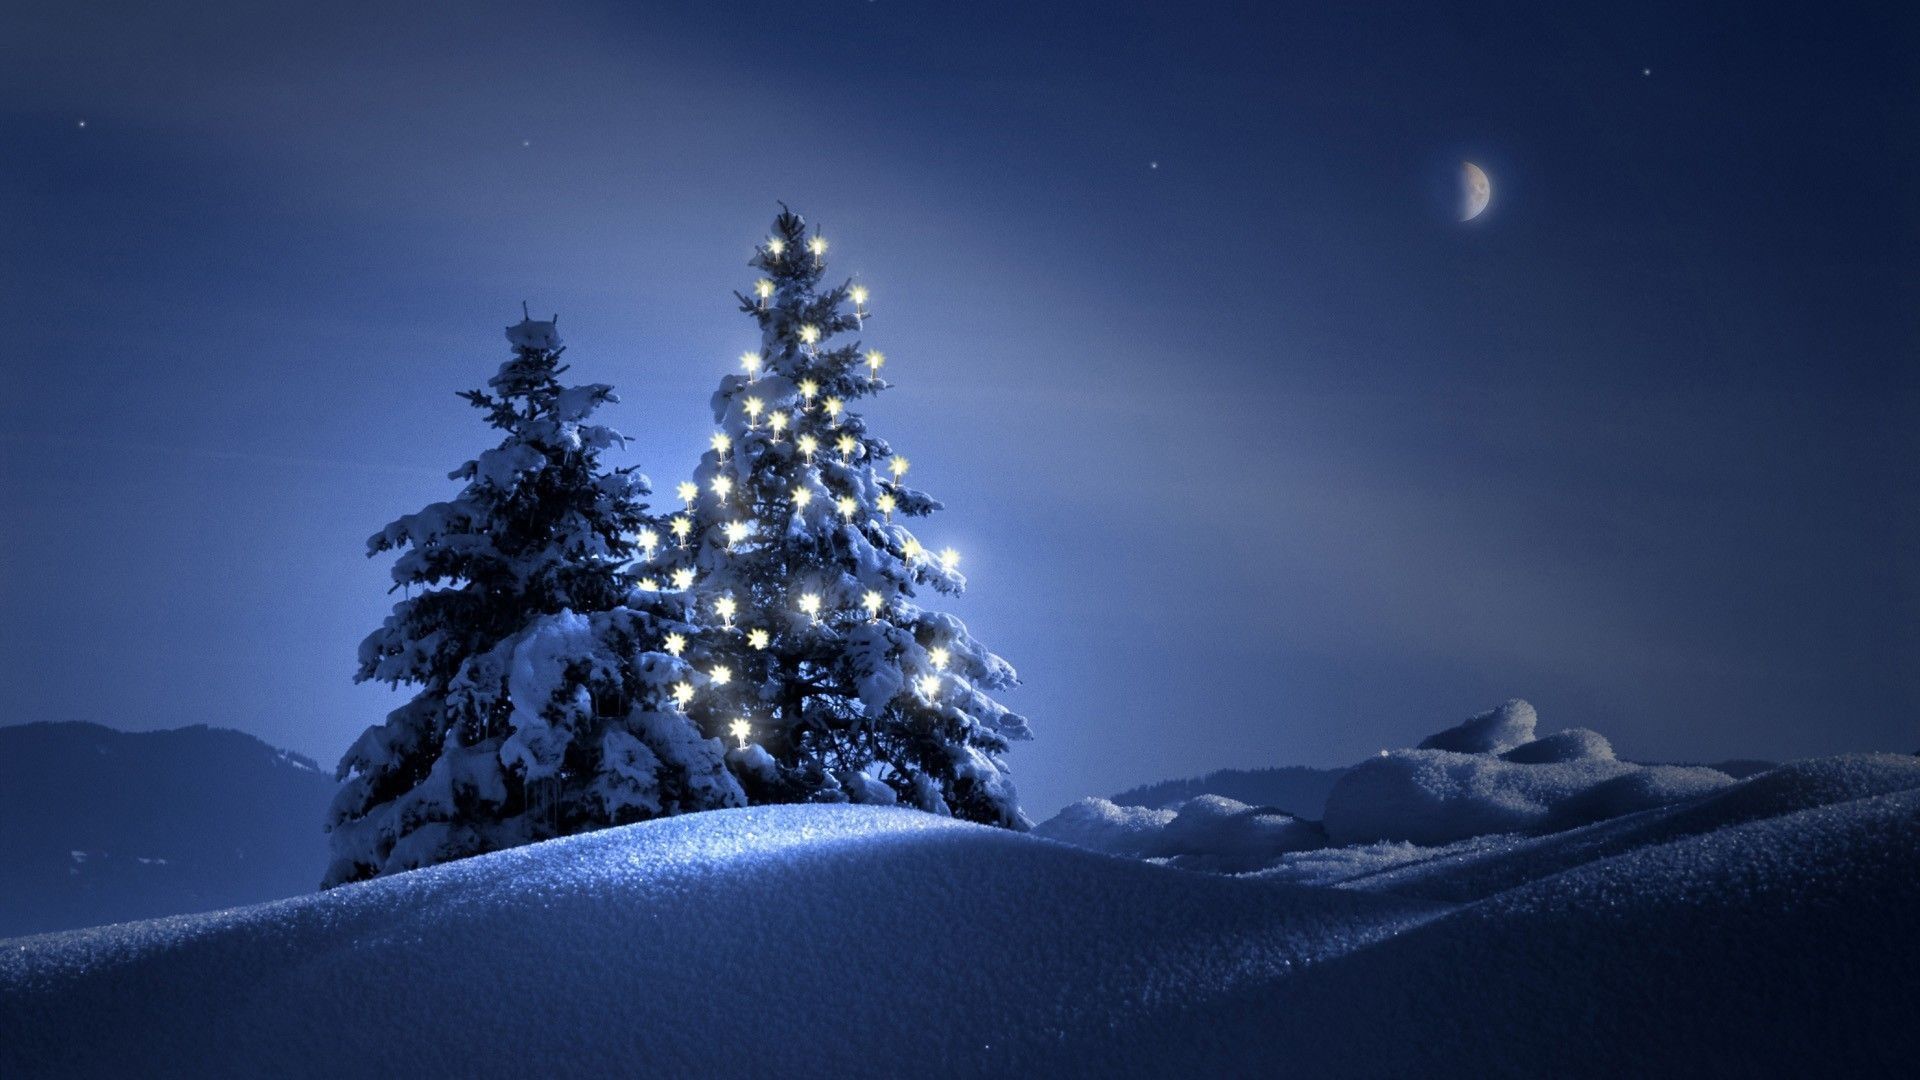 General 1920x1080 Christmas Christmas Tree snow night winter